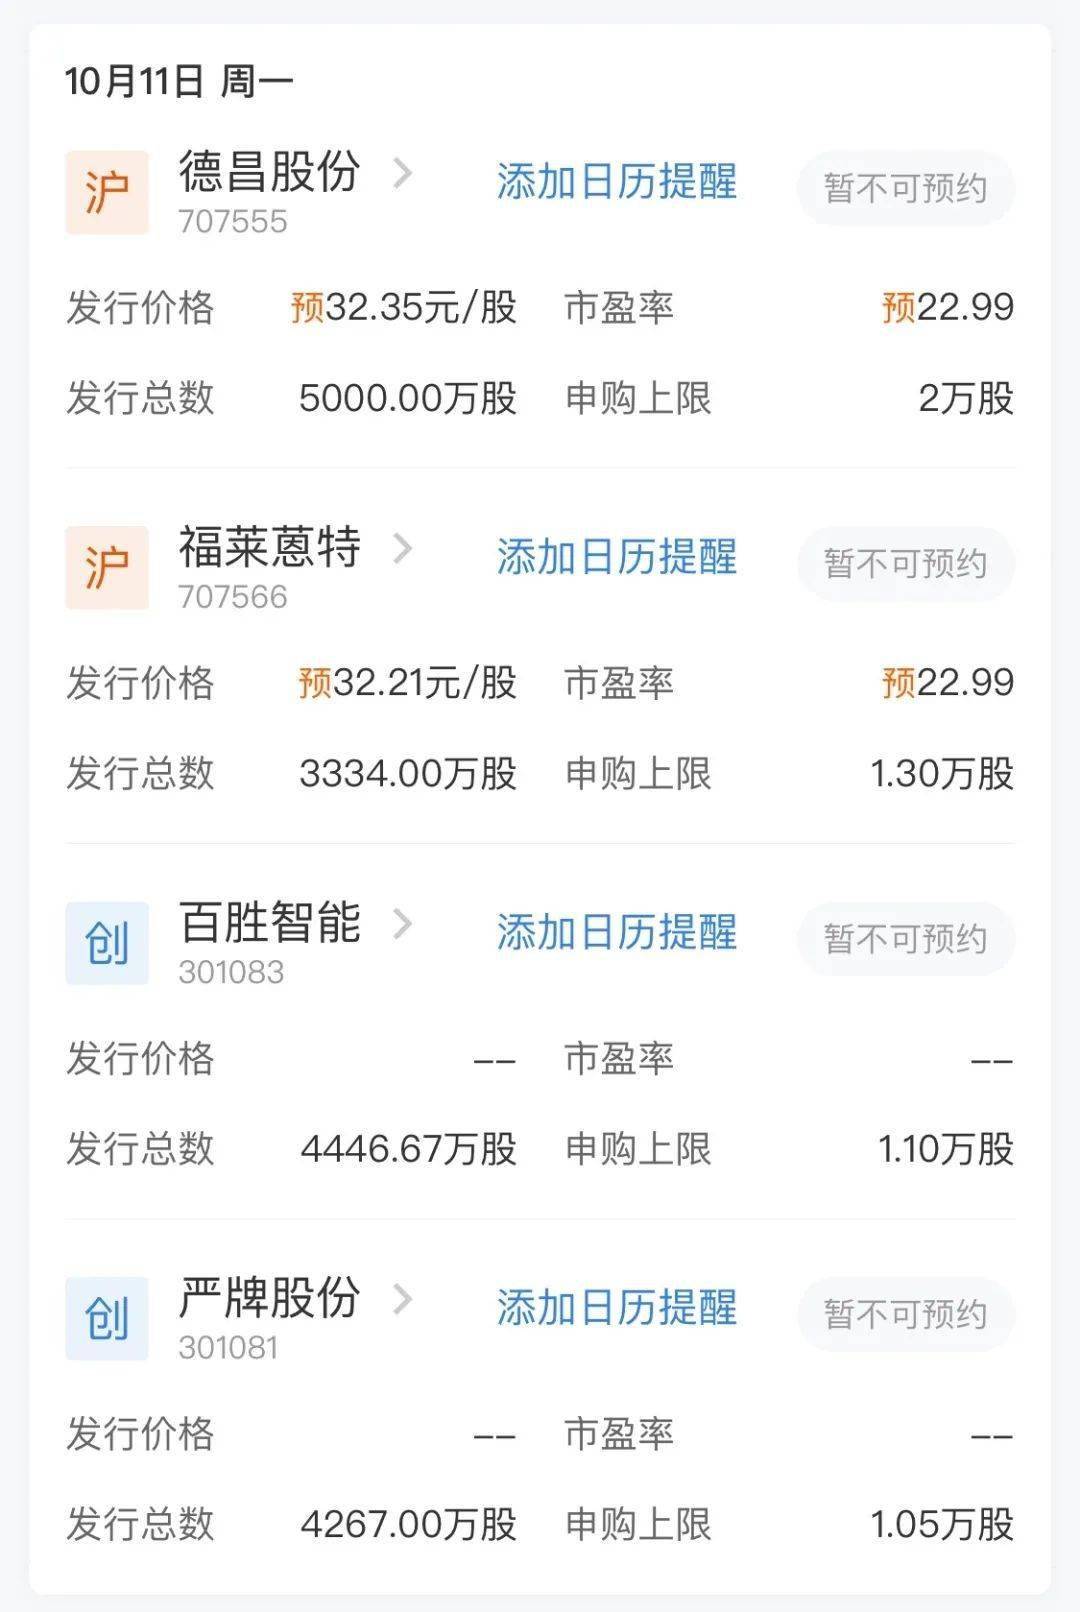 下周重磅日程 10月11日至10月17日当周重磅财经事件一览 中国香港 全网搜